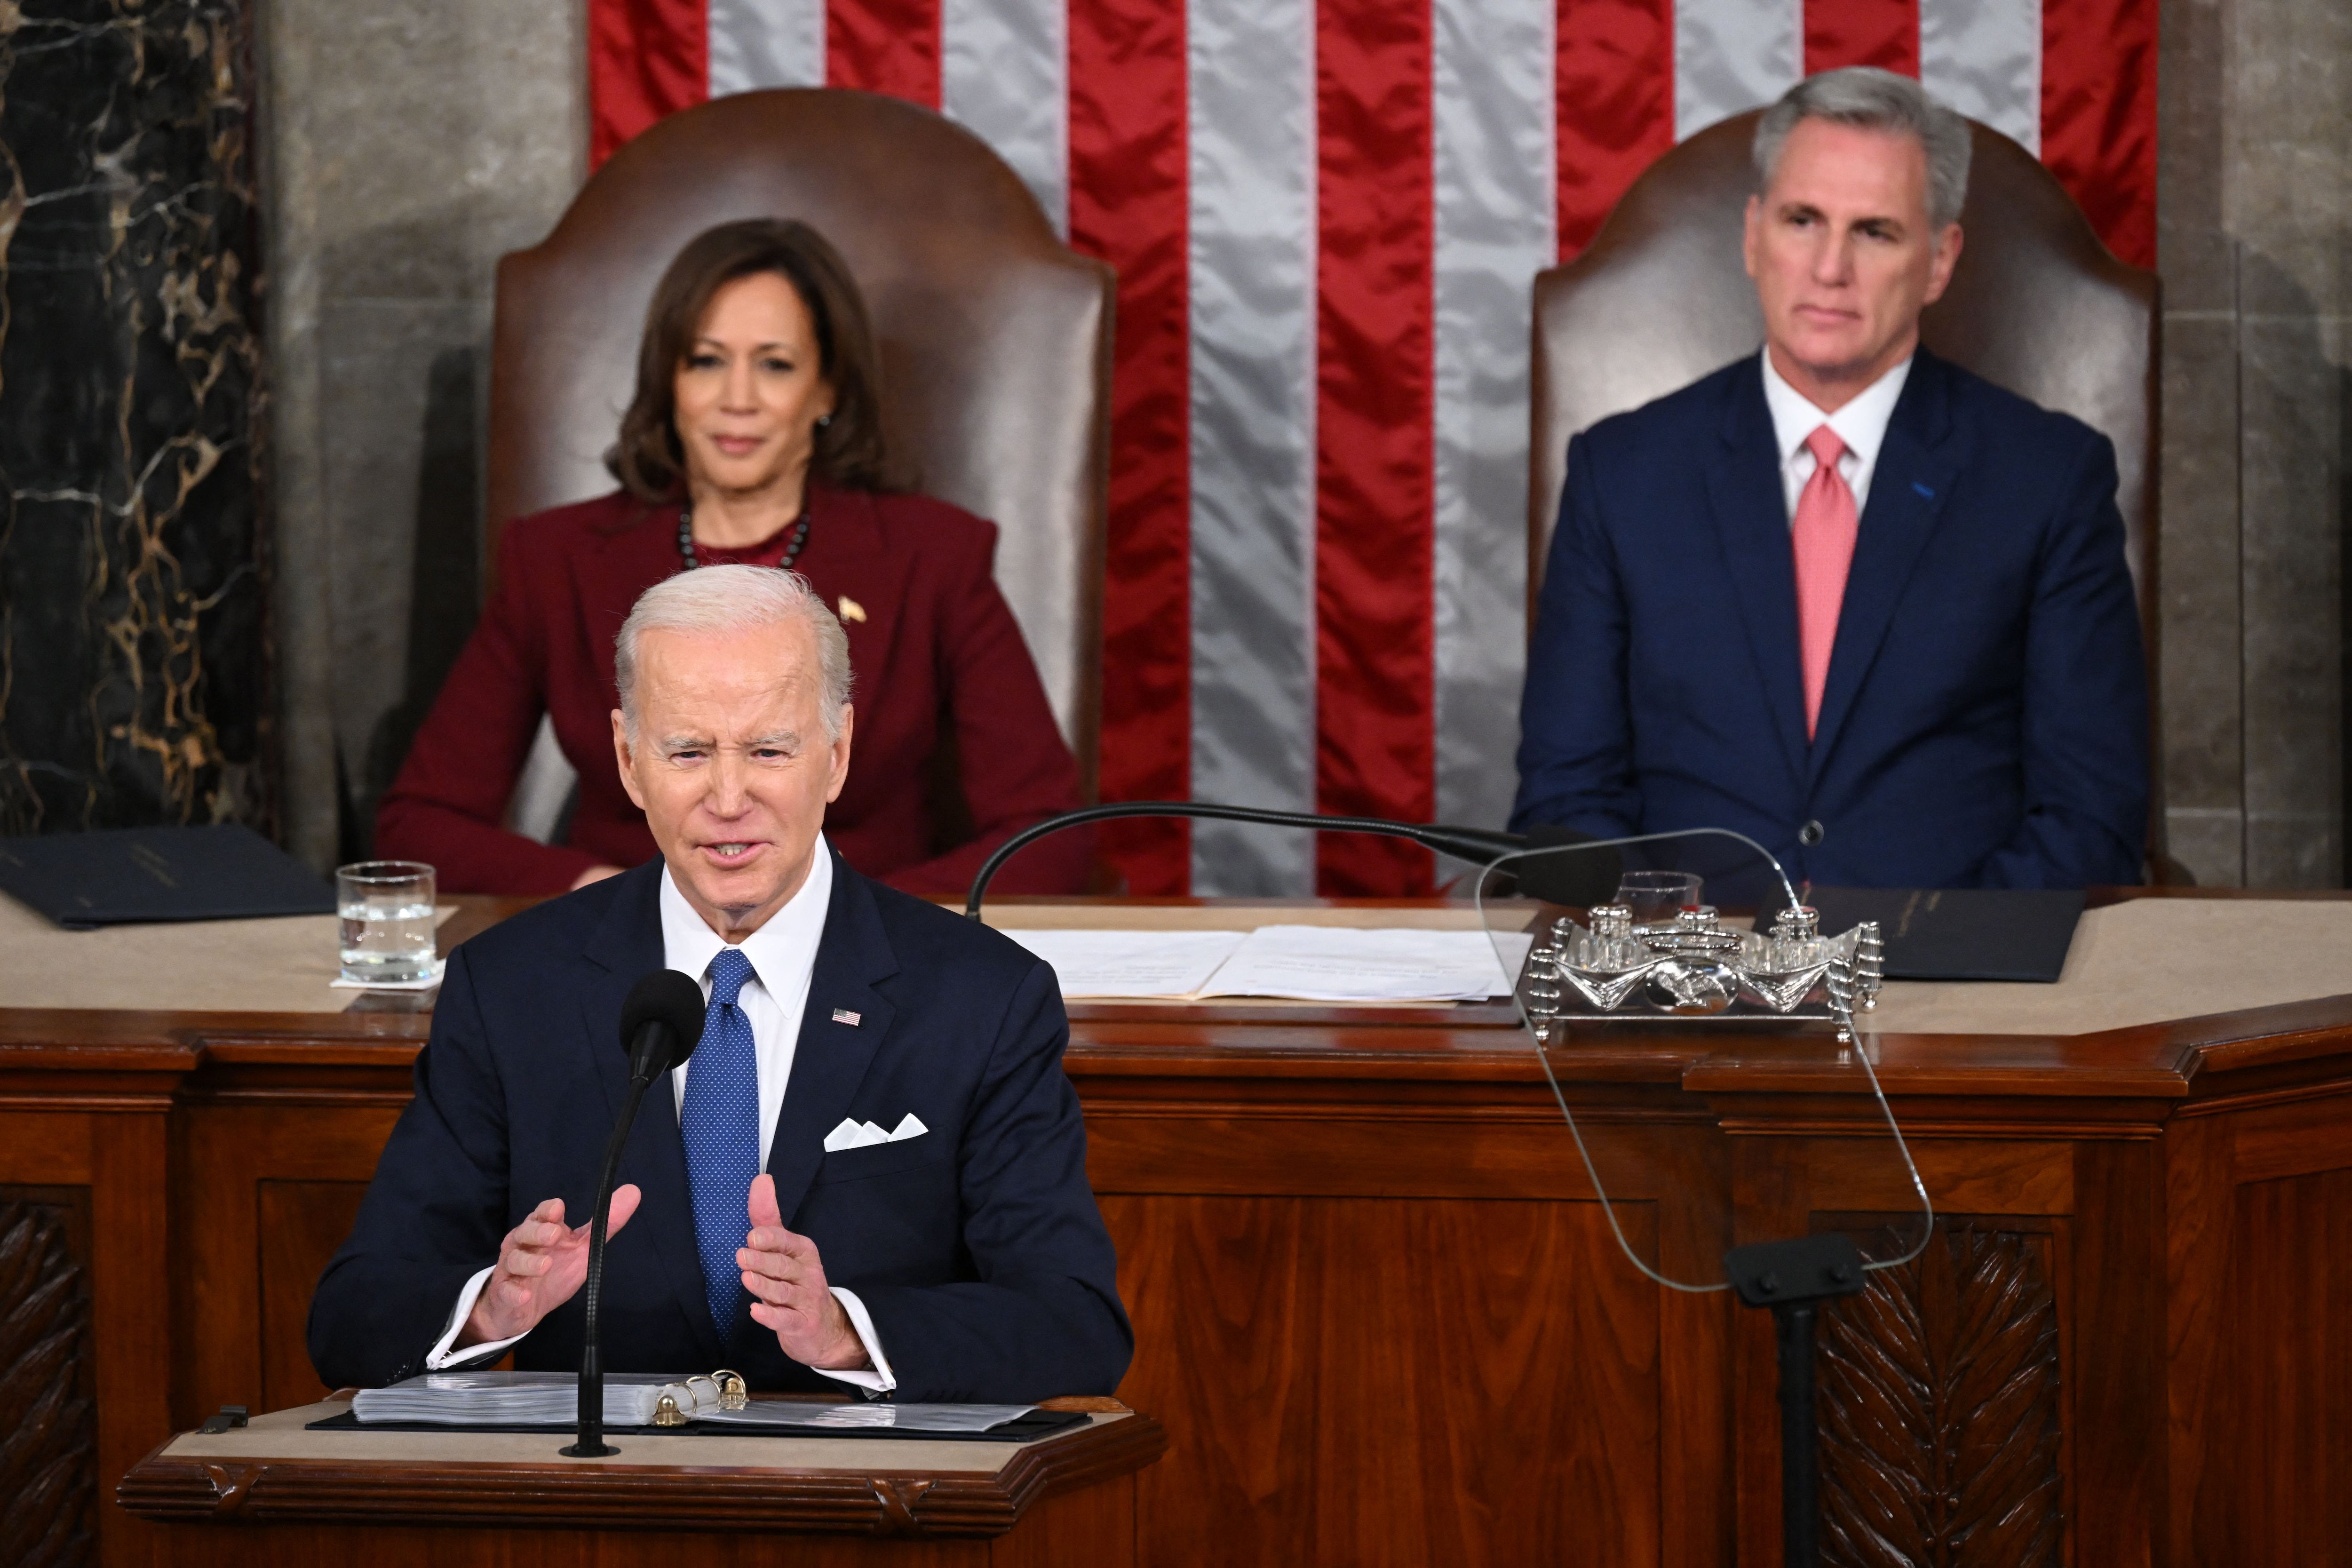 La vicepresidenta de EE. UU., Kamala Harris, y el presidente de la Cámara de Representantes de EE. UU., Kevin McCarthy (R-CA), escuchan mientras el presidente de EE. UU., Joe Biden, pronuncia el discurso sobre el estado de la Unión en la Cámara de Representantes del Capitolio de EE. UU. en Washington, DC, el 7 de febrero de 2023.